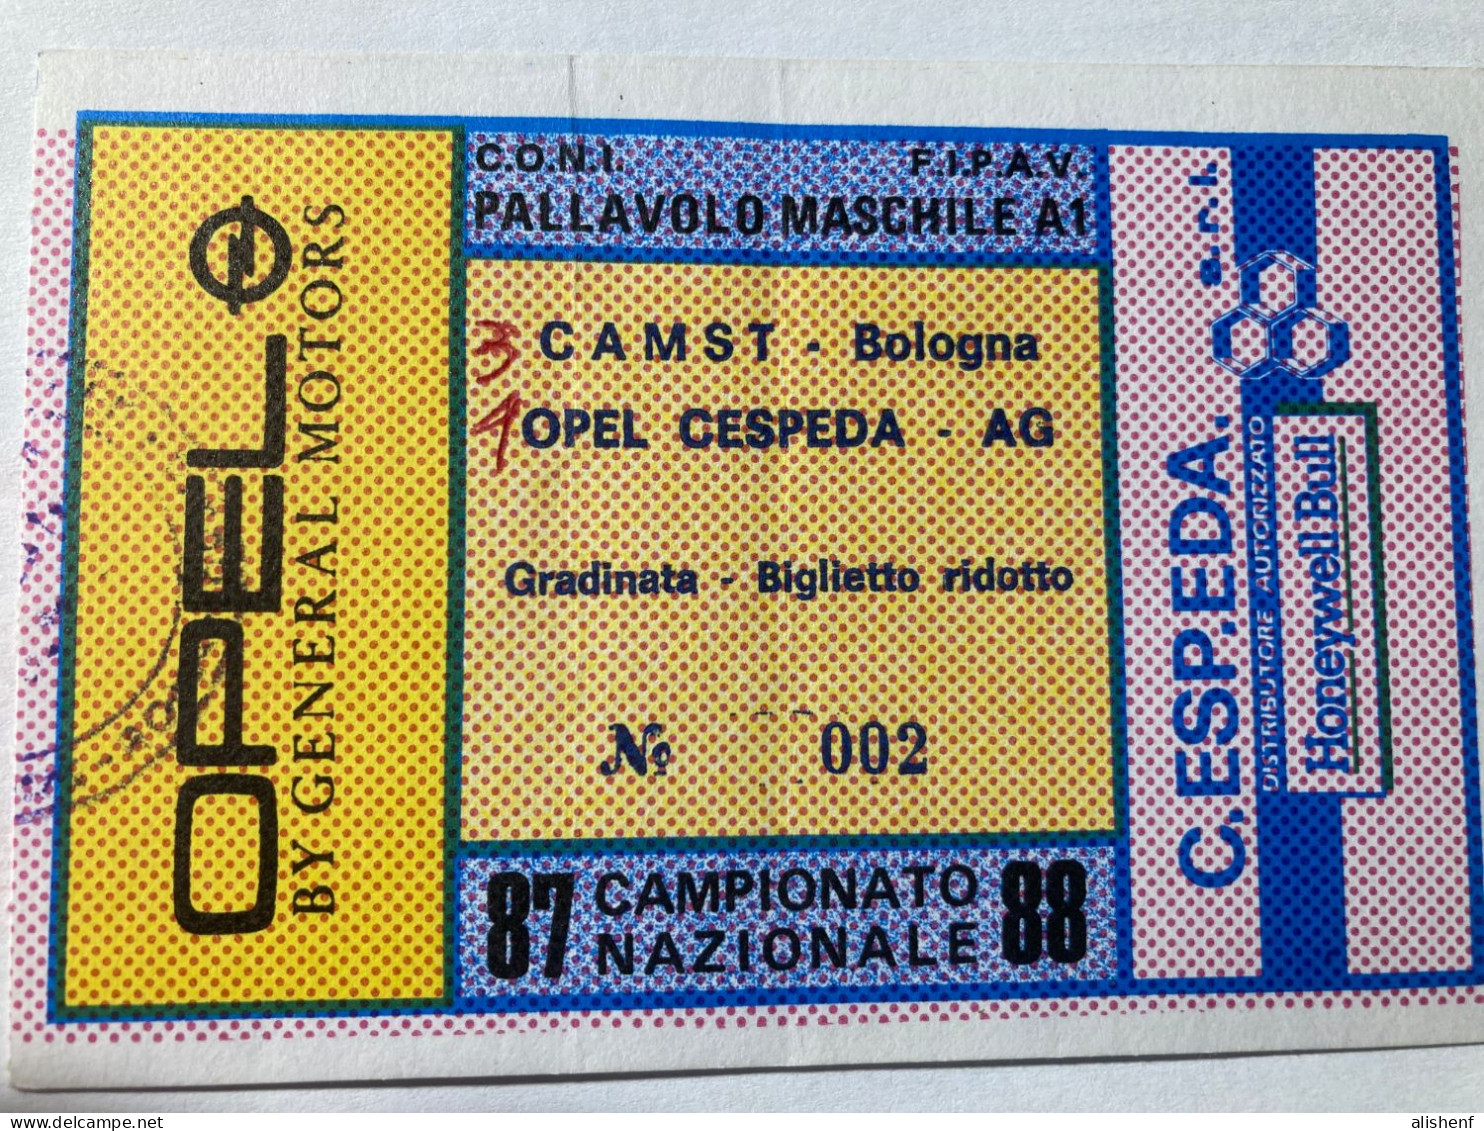 Biglietto Pallavolo Maschile A1 Opel Cespeda Agrigento CAMST Bologna Campionato 1987-88 - Tickets - Vouchers